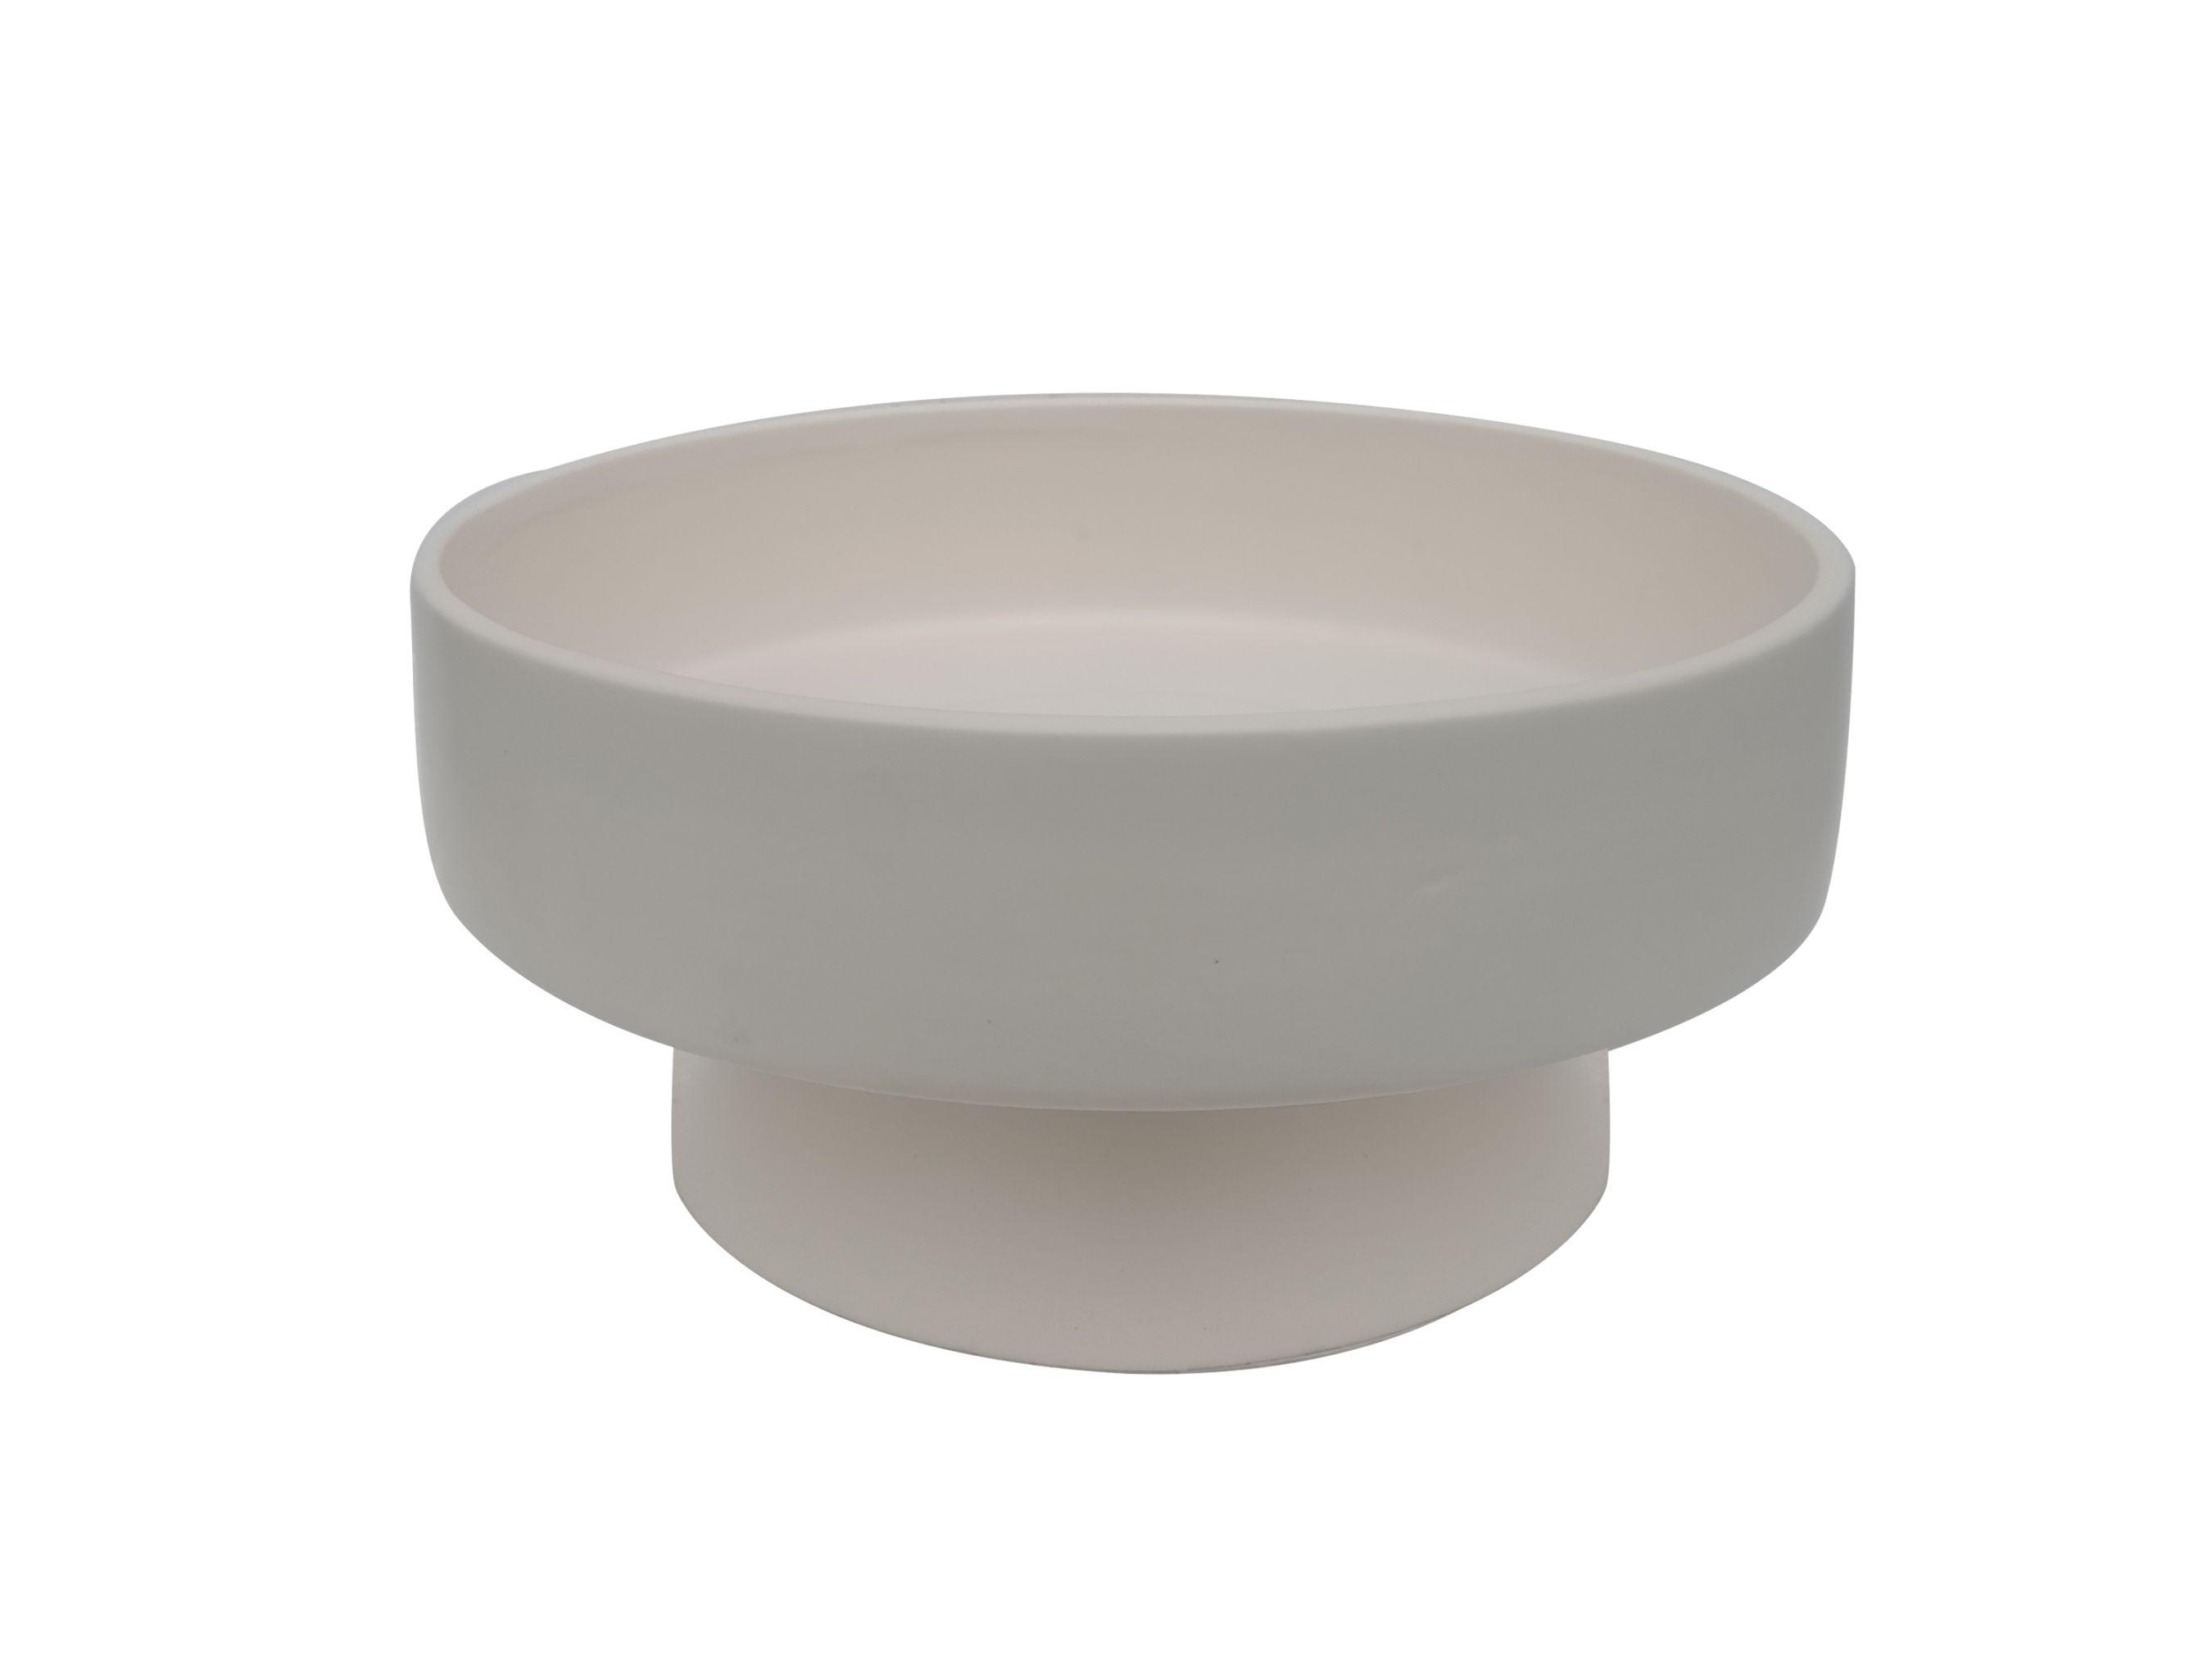 Dekorační Miska Bowl, Ø: 24cm - bílá, Moderní, keramika (24,5/12cm) - Modern Living